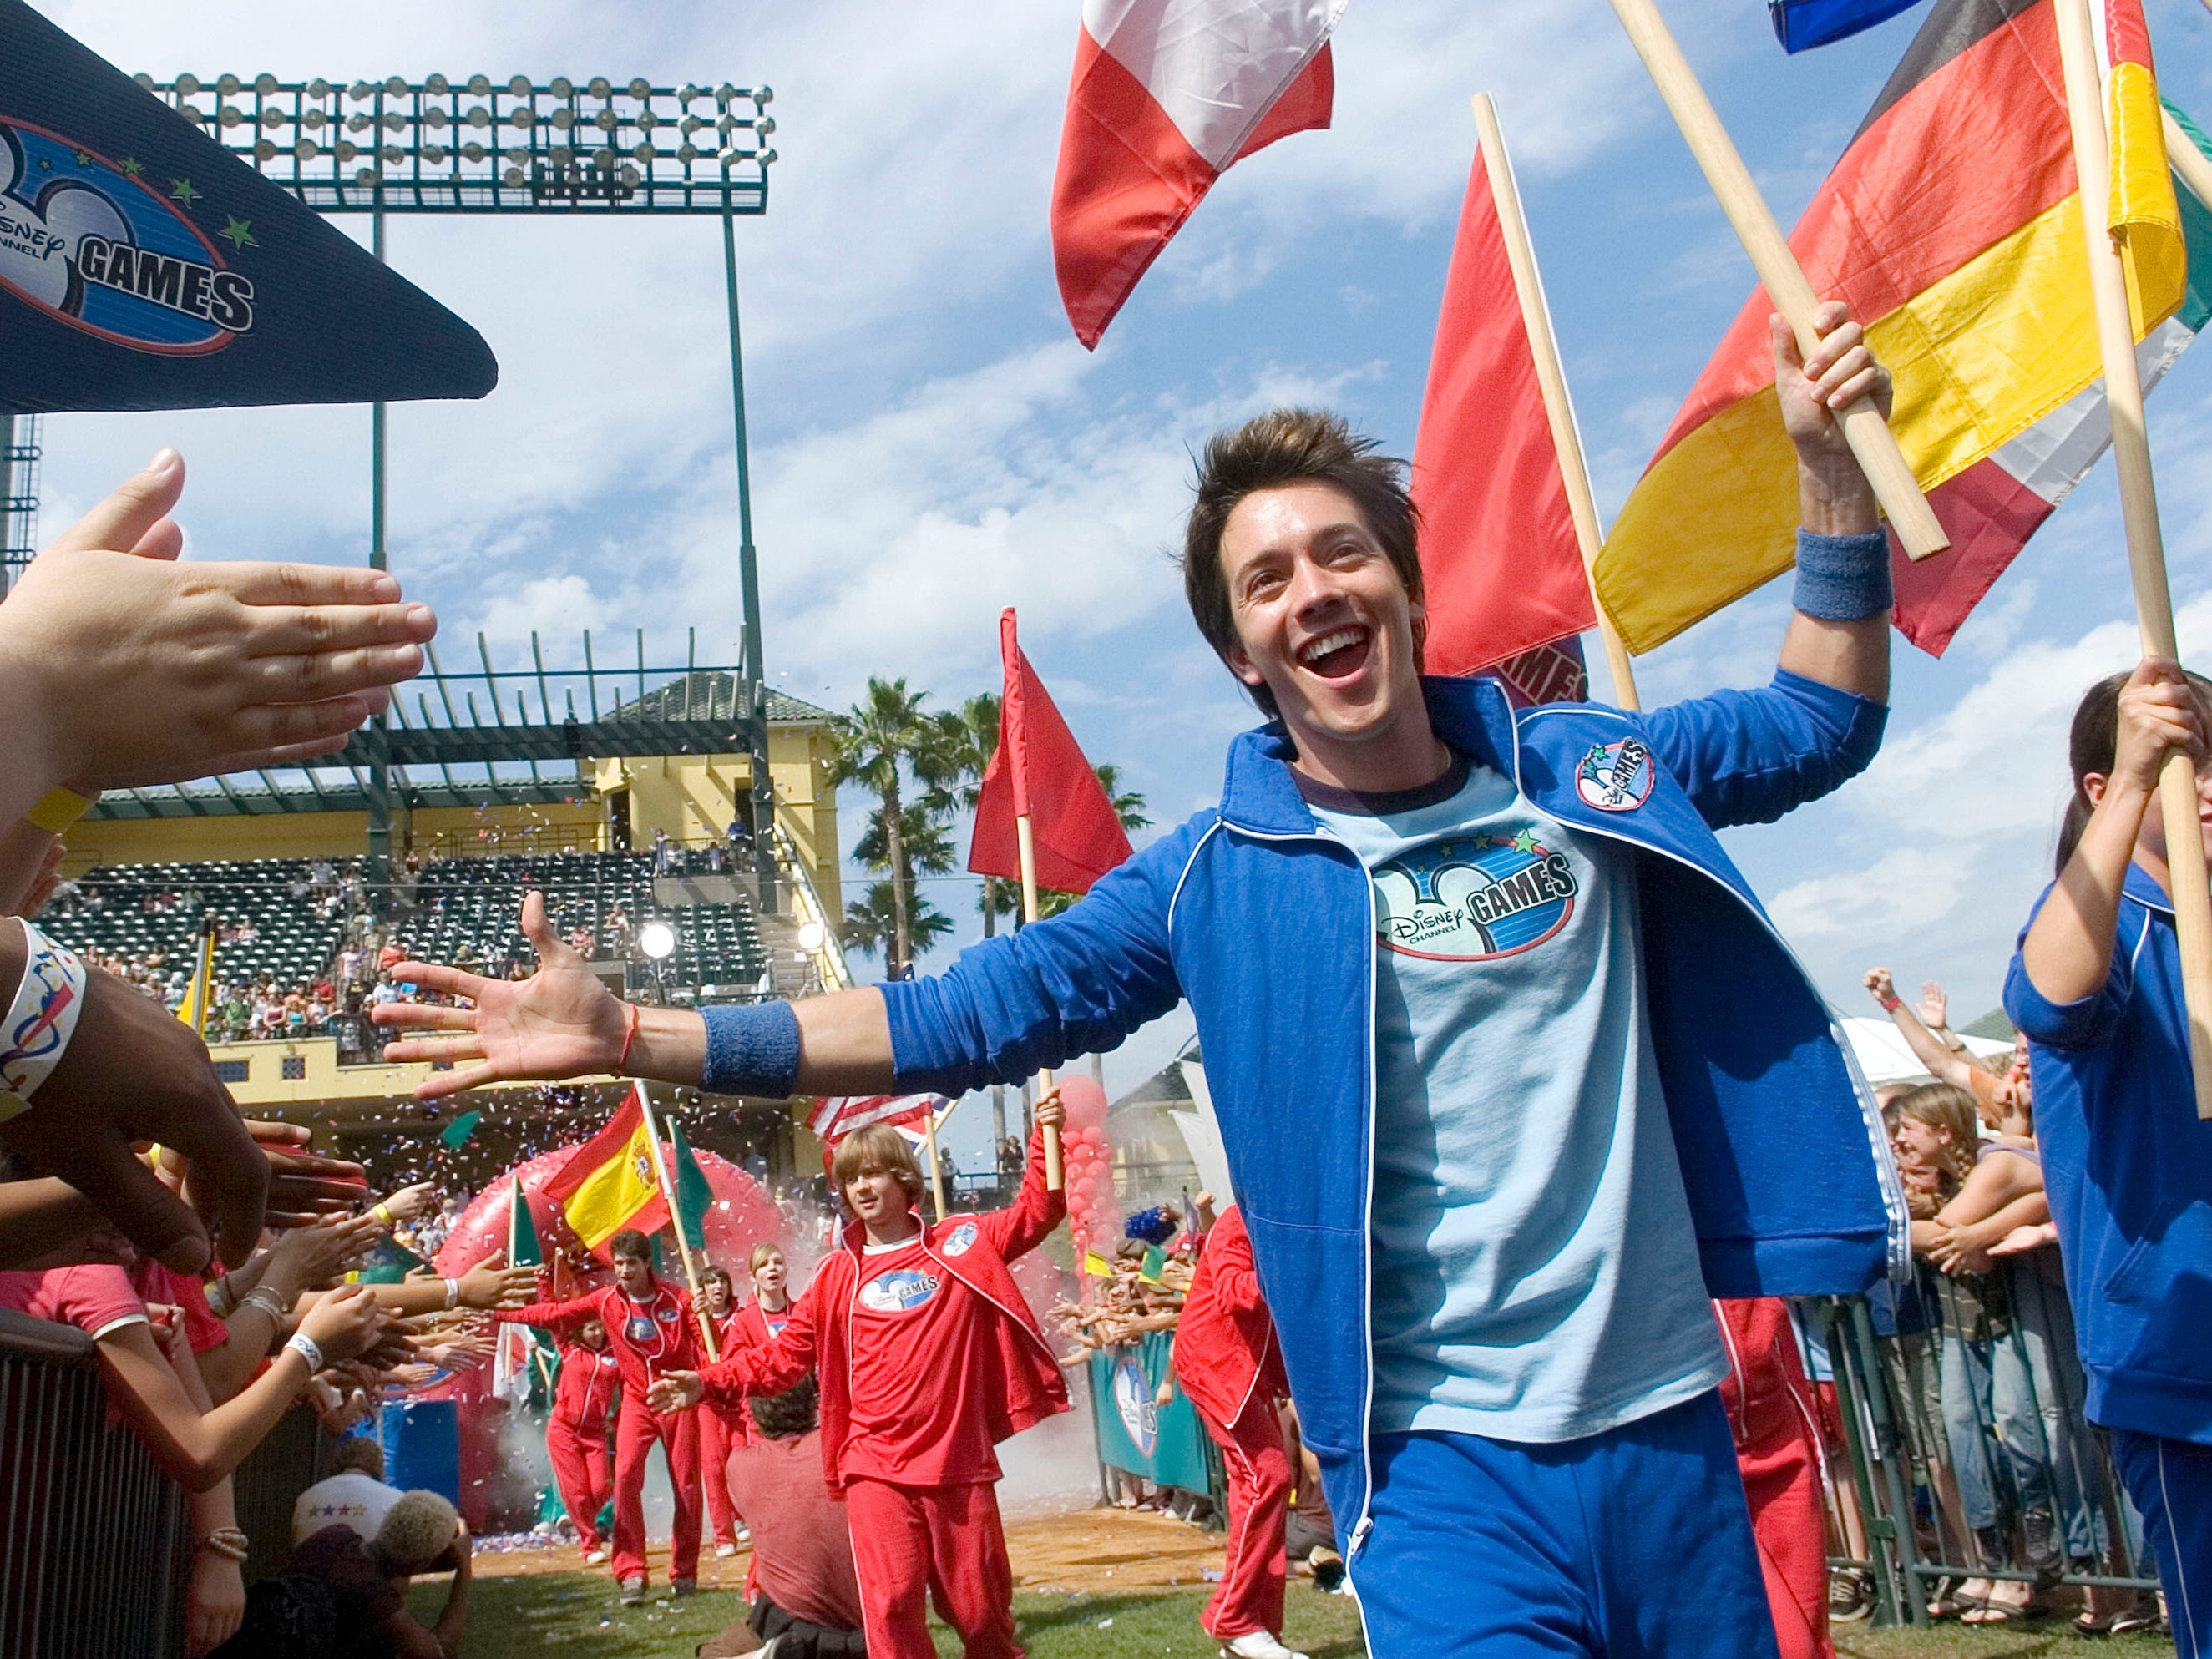 Roger Gonzalez-Garca trägt bei den Disney-Channel-Spielen im Jahr 2007 einen blauen Trainingsanzug mit einer Hand, die er den High-Five-Fans entgegenstreckt, und einer Flagge in der anderen Hand